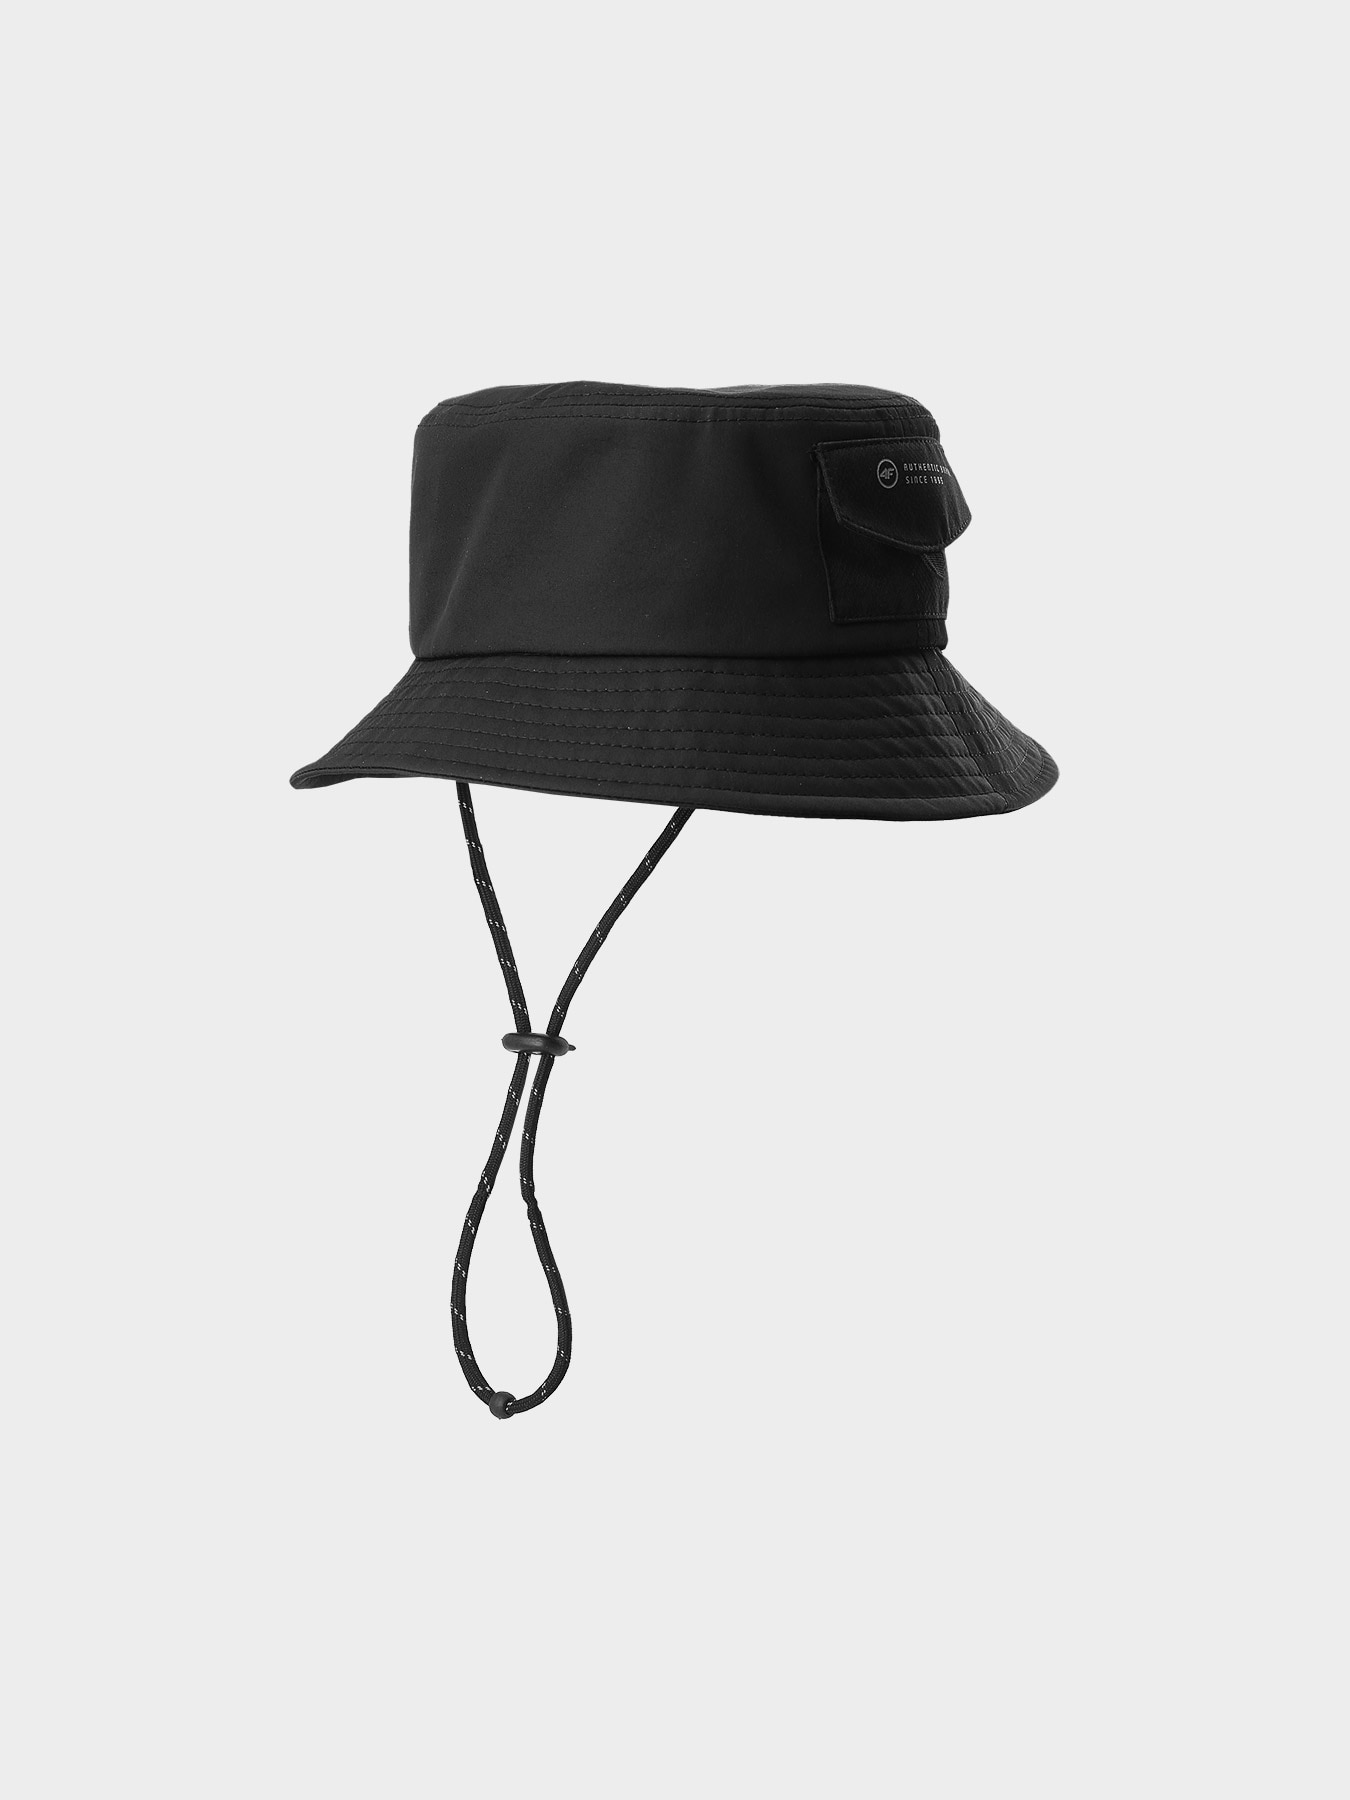 Pălărie bucket hat pentru băieți - neagră